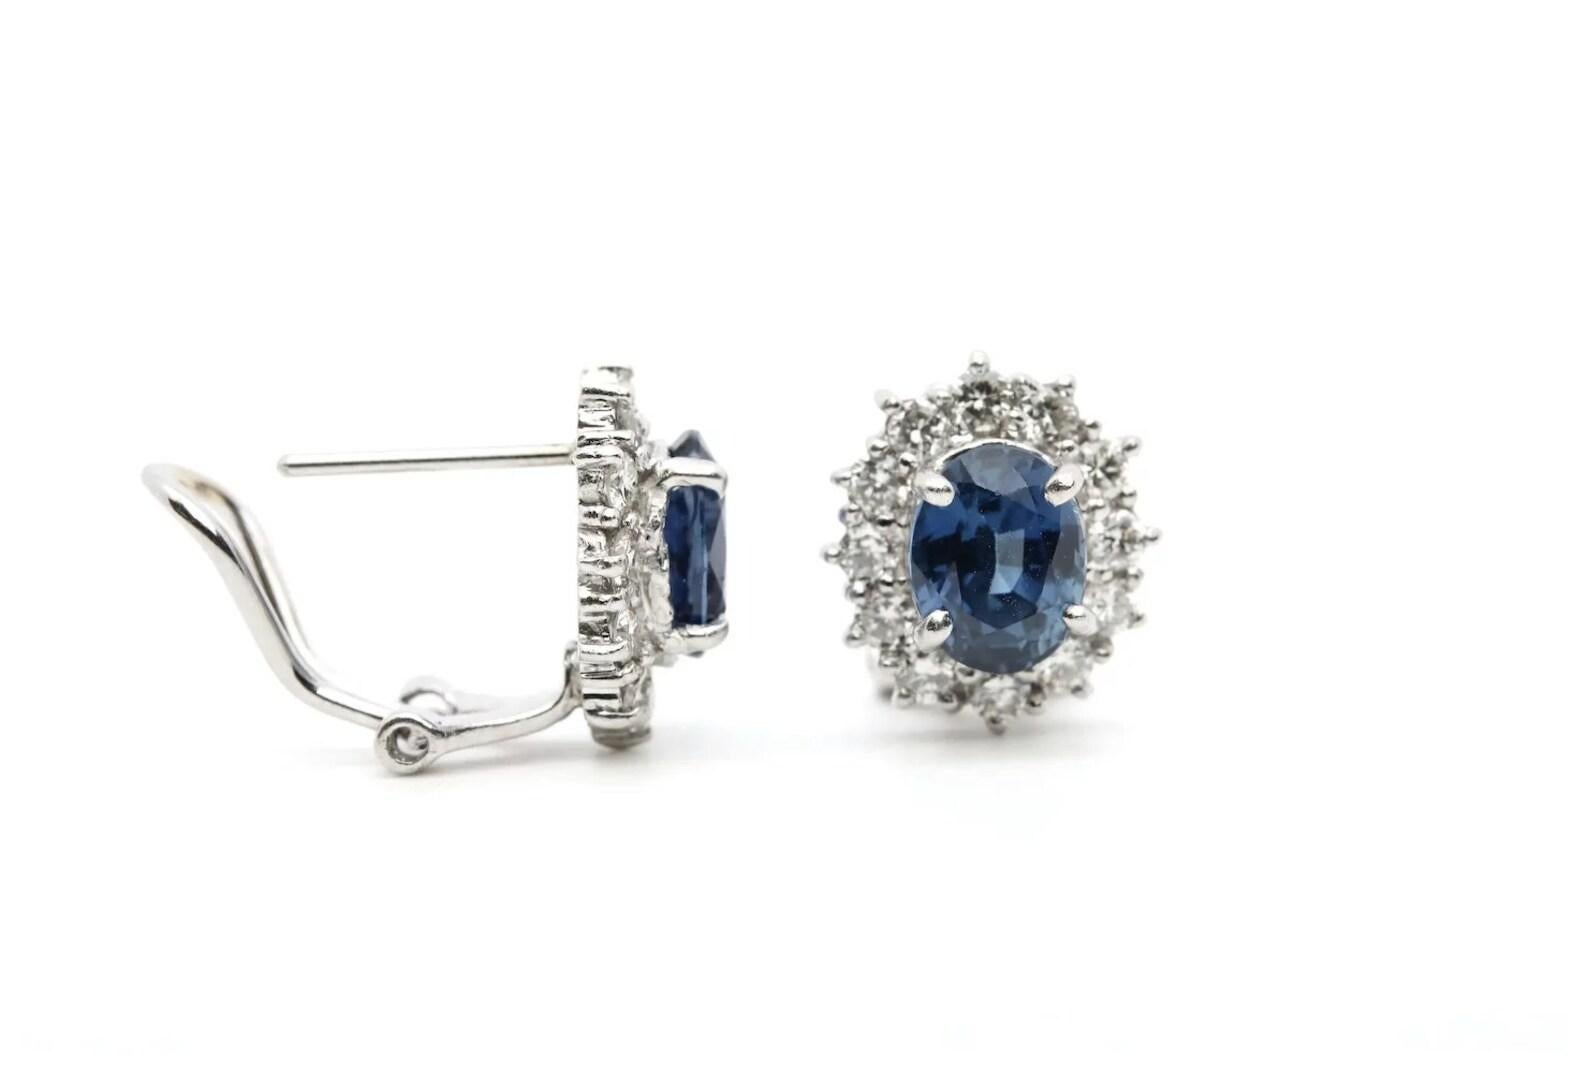 Ein Paar wunderschöne Ceylon-Saphir- und Diamant-Ohrringe aus Platin. Im Mittelpunkt stehen zwei lebhafte blaue Ceylon-Saphire von VS-Reinheit mit einem Gesamtgewicht von 3,40 Karat. Die Saphire werden von insgesamt 24 funkelnden Diamanten umrahmt.